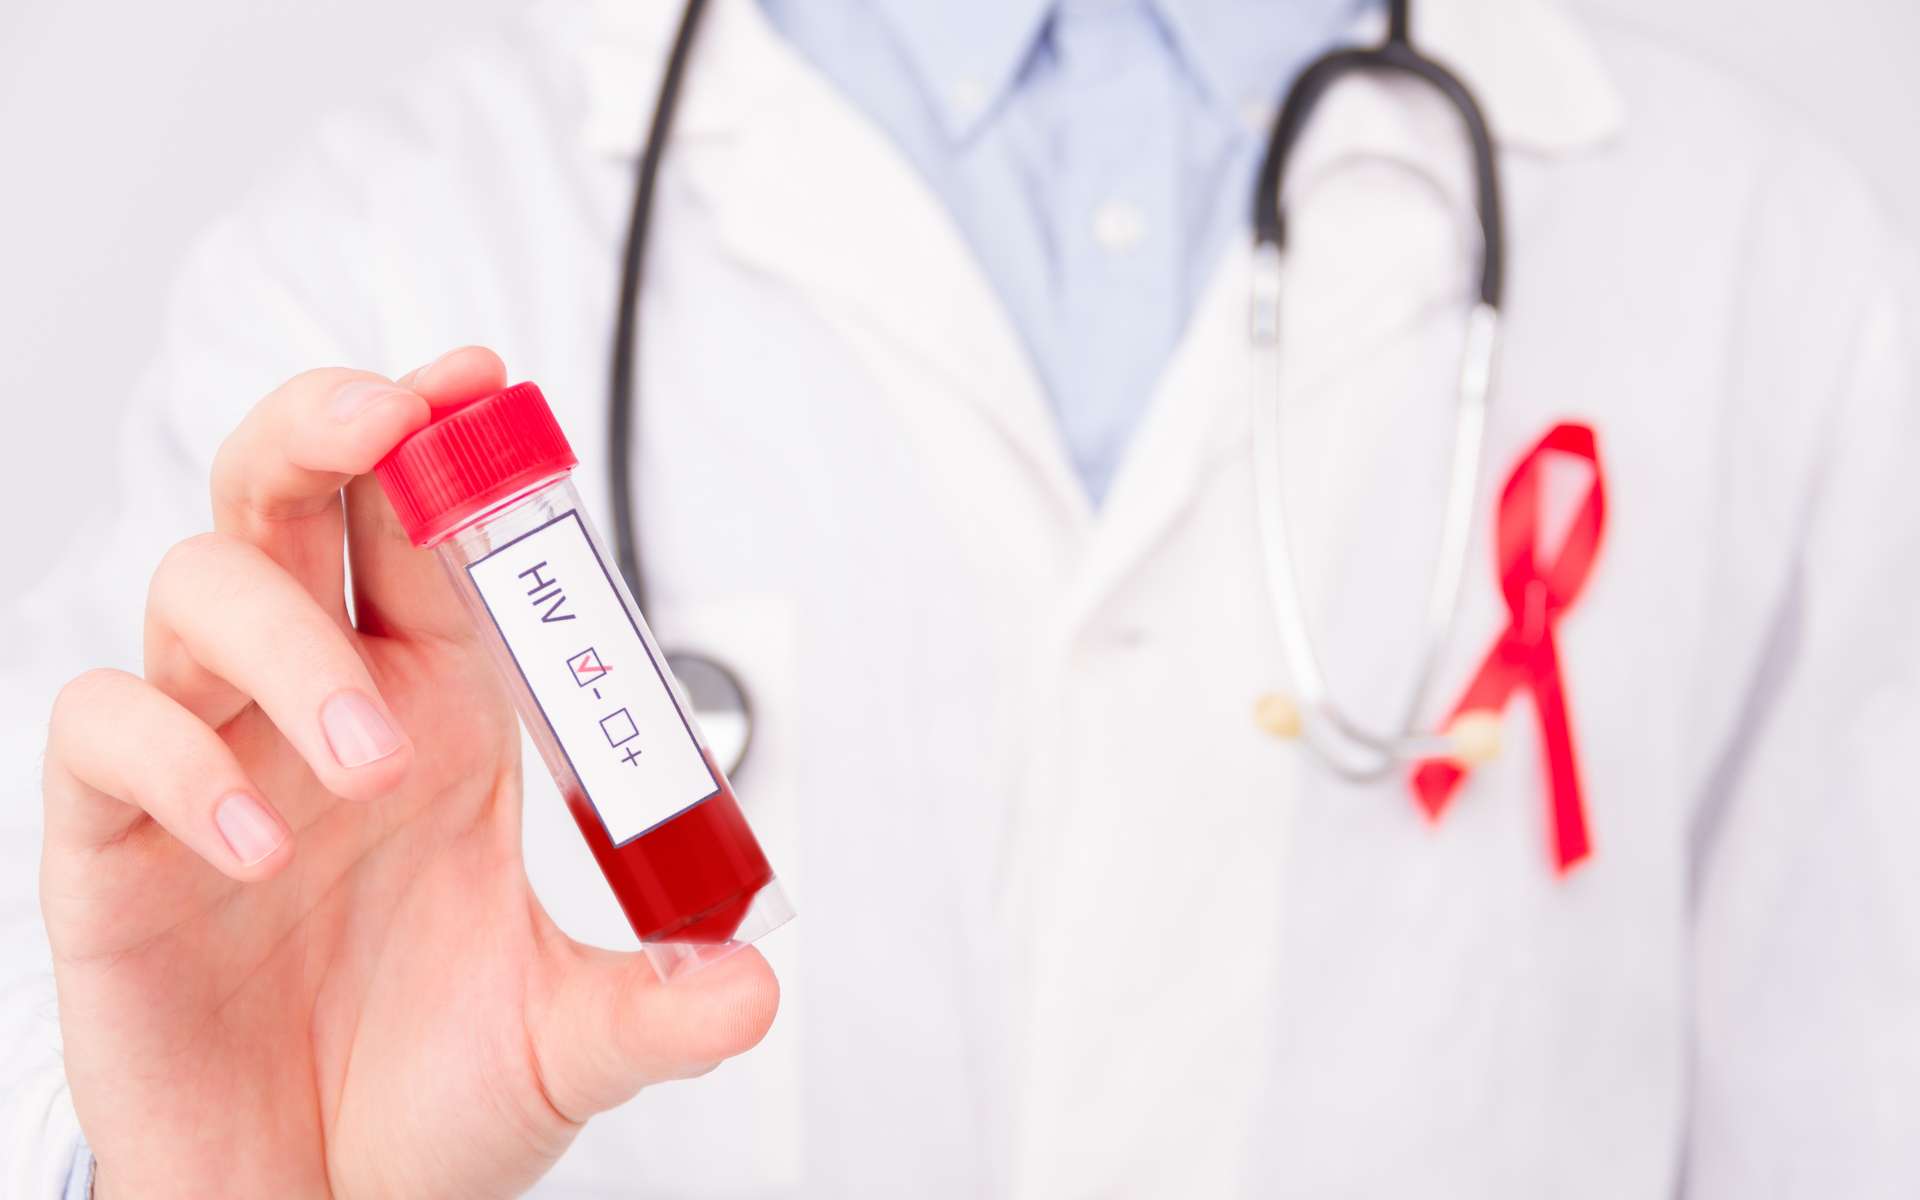 Un sixième patient infecté par le VIH déclaré en rémission prolongée